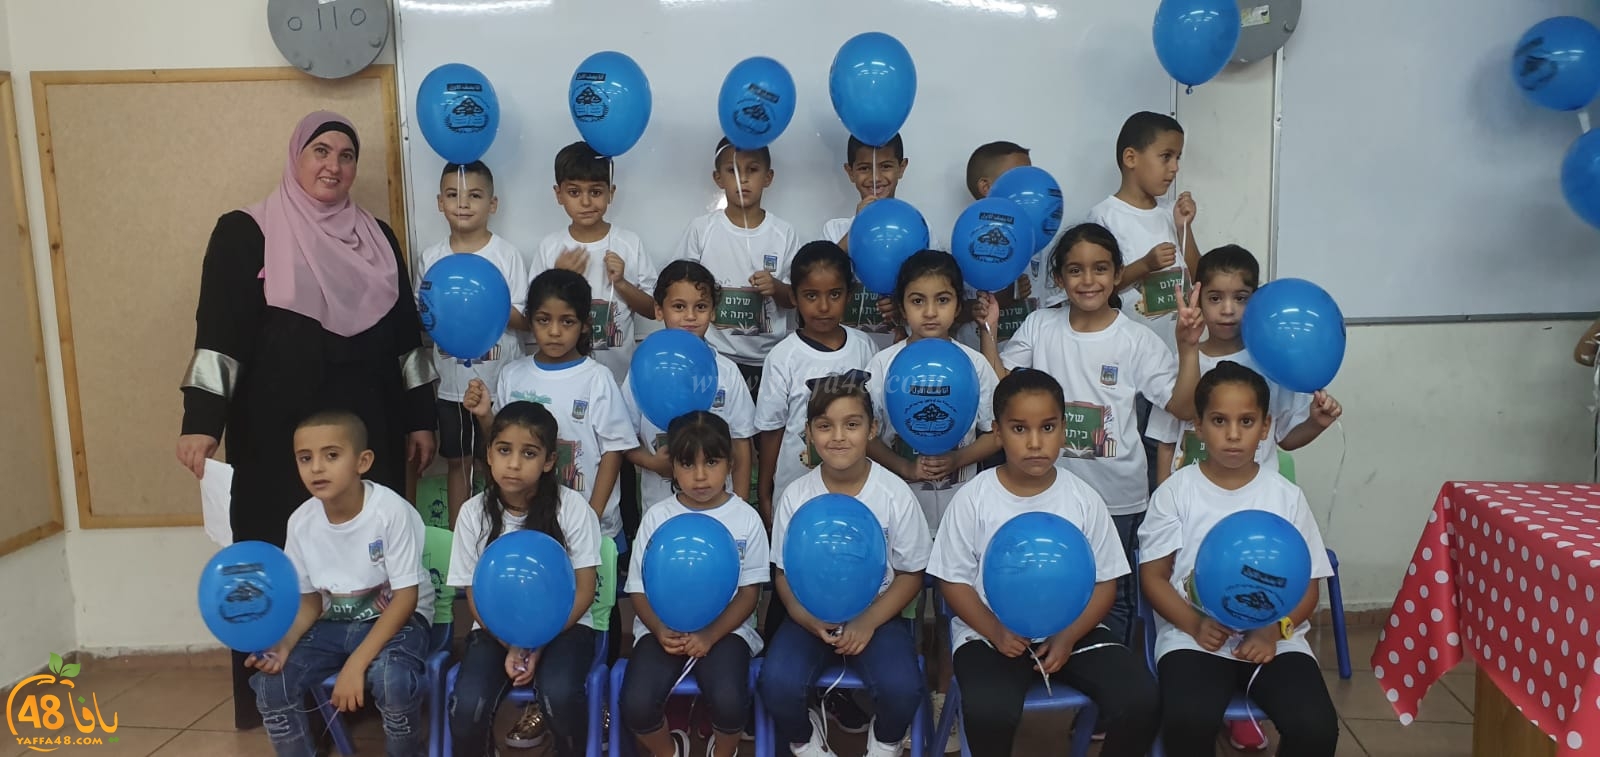 فيديو: مدرسة الراشدية في اللد تستقبل طلابها في العام الدراسي الجديد 